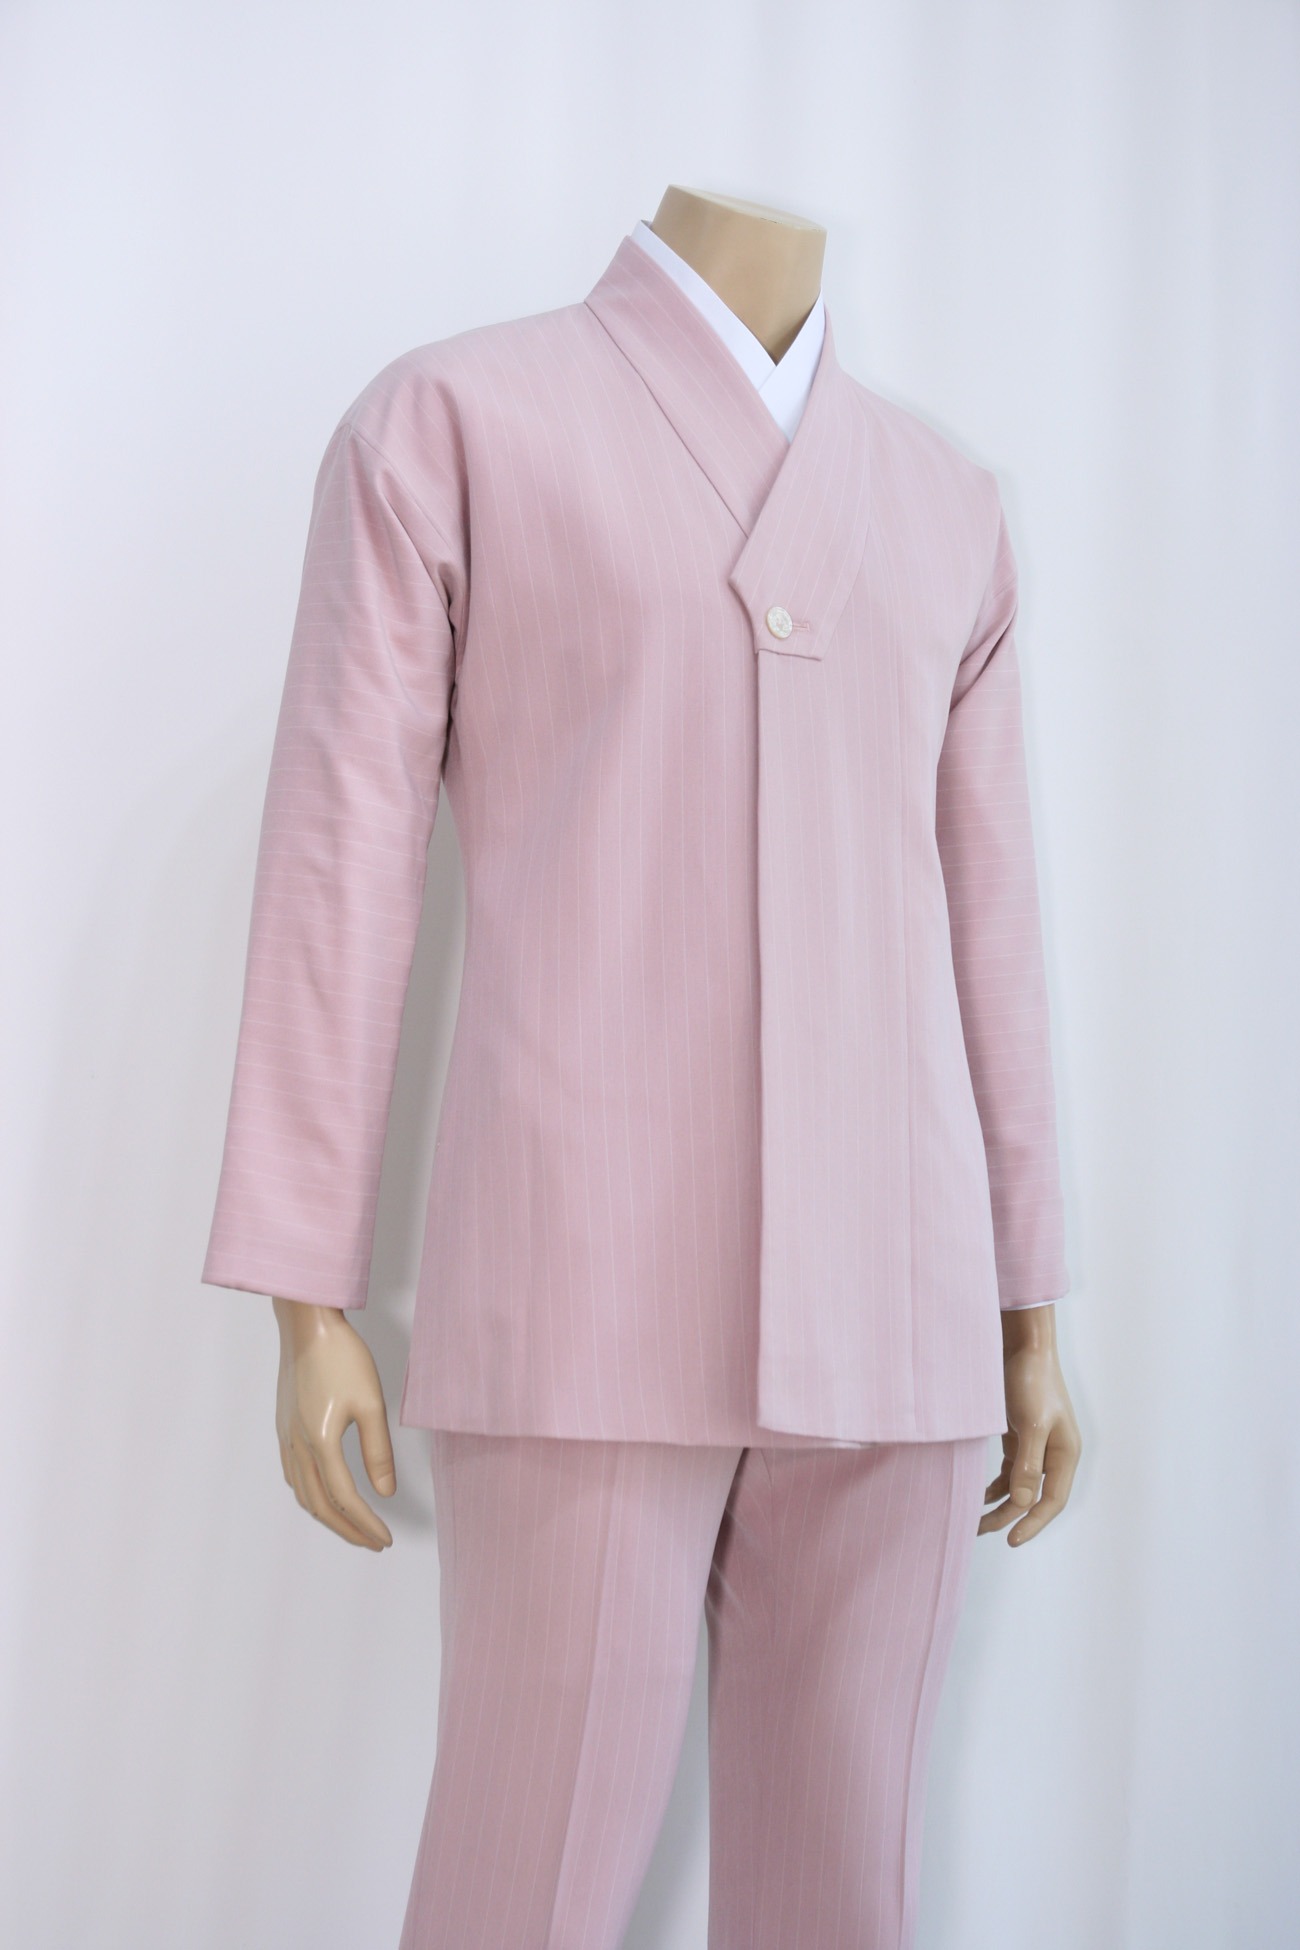 [Rental] Pink Stripe Fastening Collar Hanbok Suit Setup